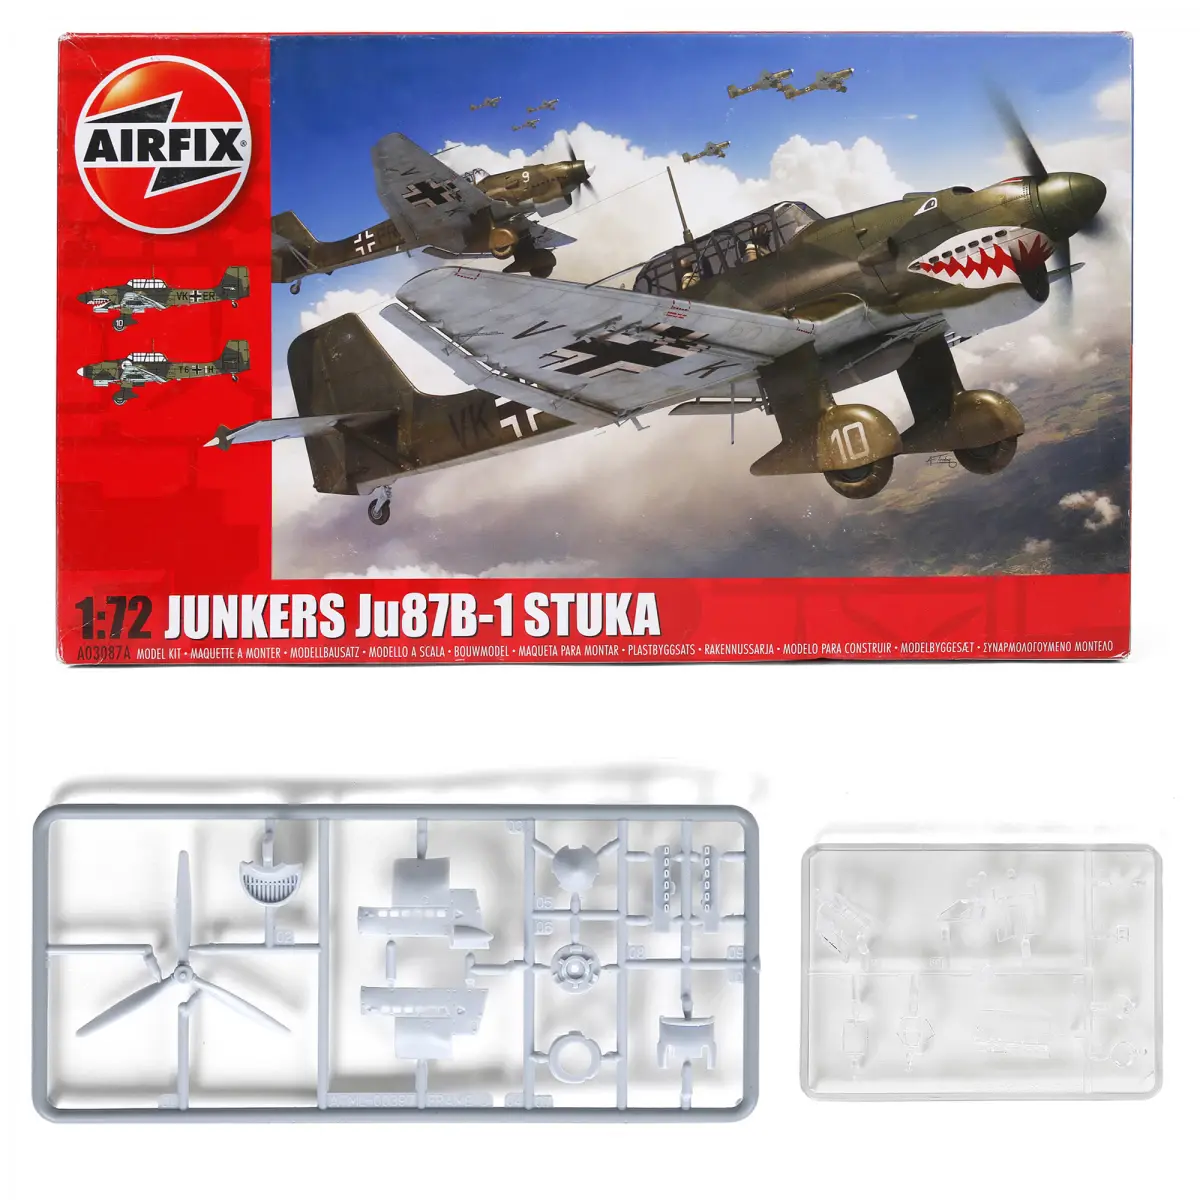 Airfix Junkers Ju87 B-1 Stucka 1:72 WWII Military Aviation Plastic Model Kit, Grey, 8Y+